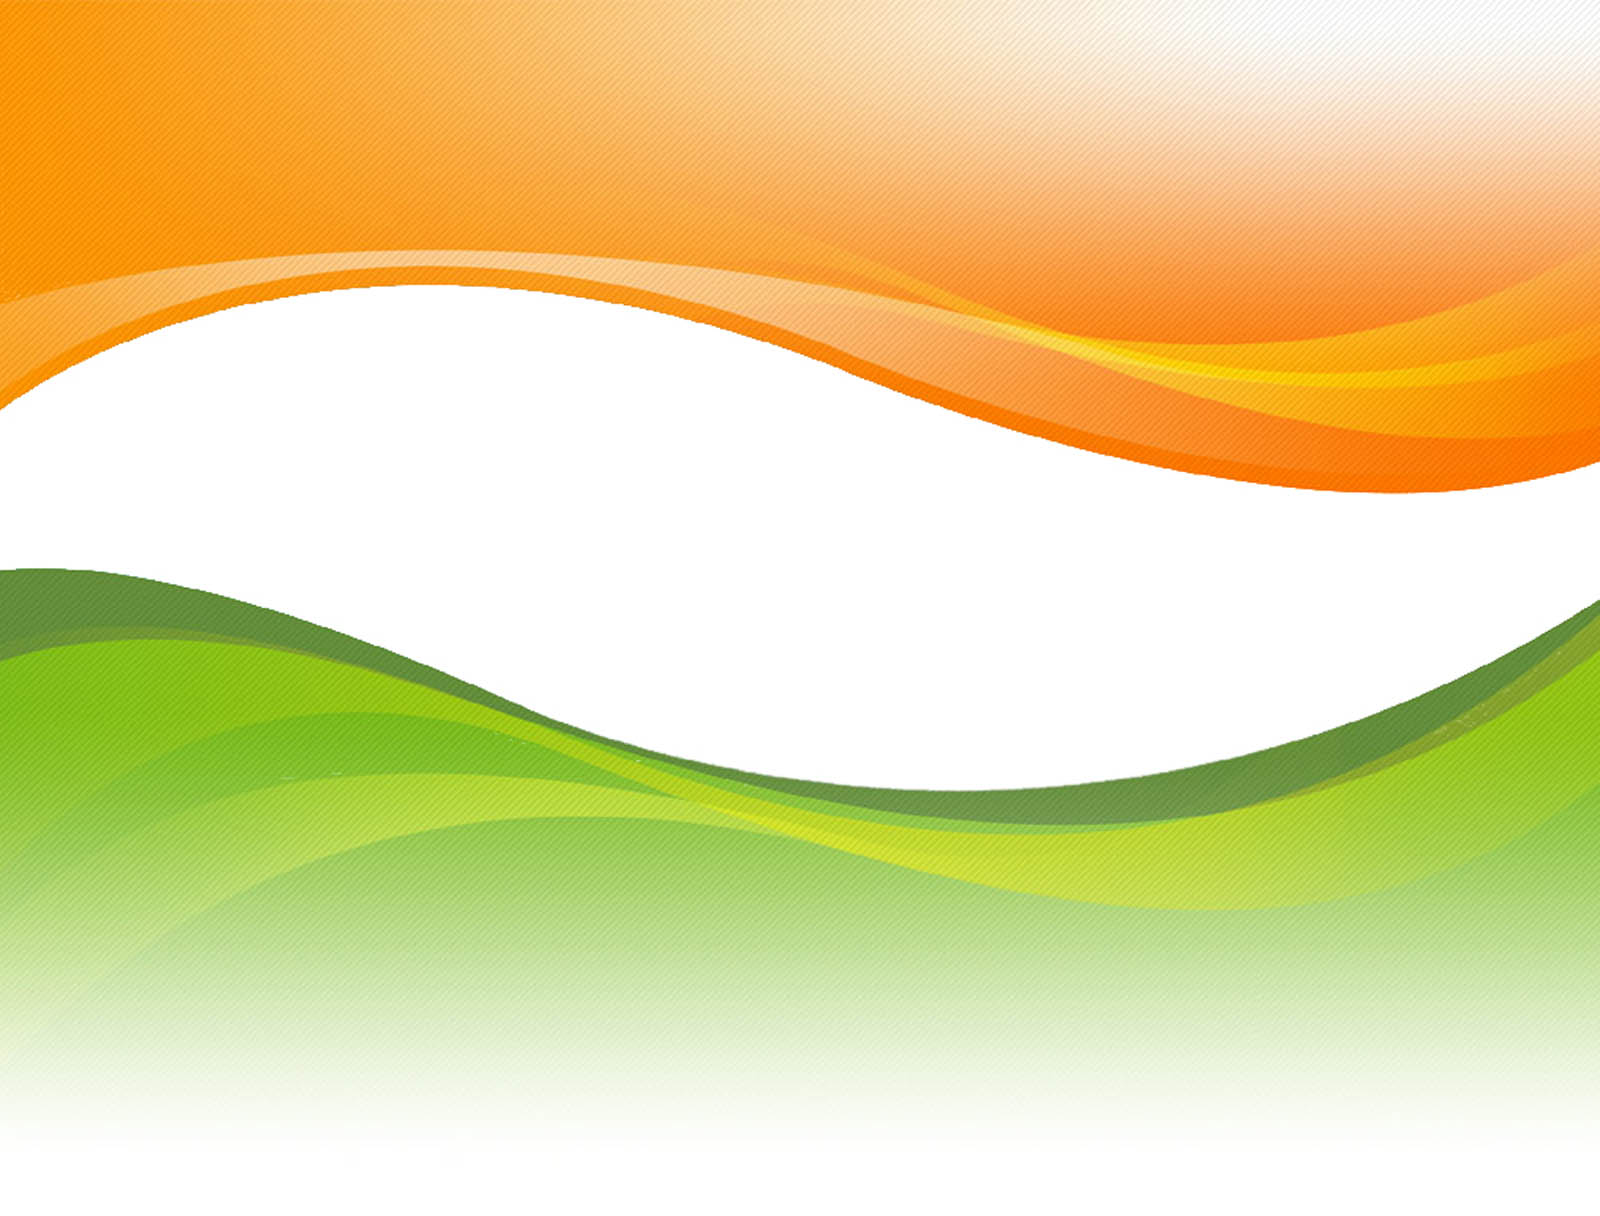 indische flagge tapete,grün,orange,gelb,linie,clip art